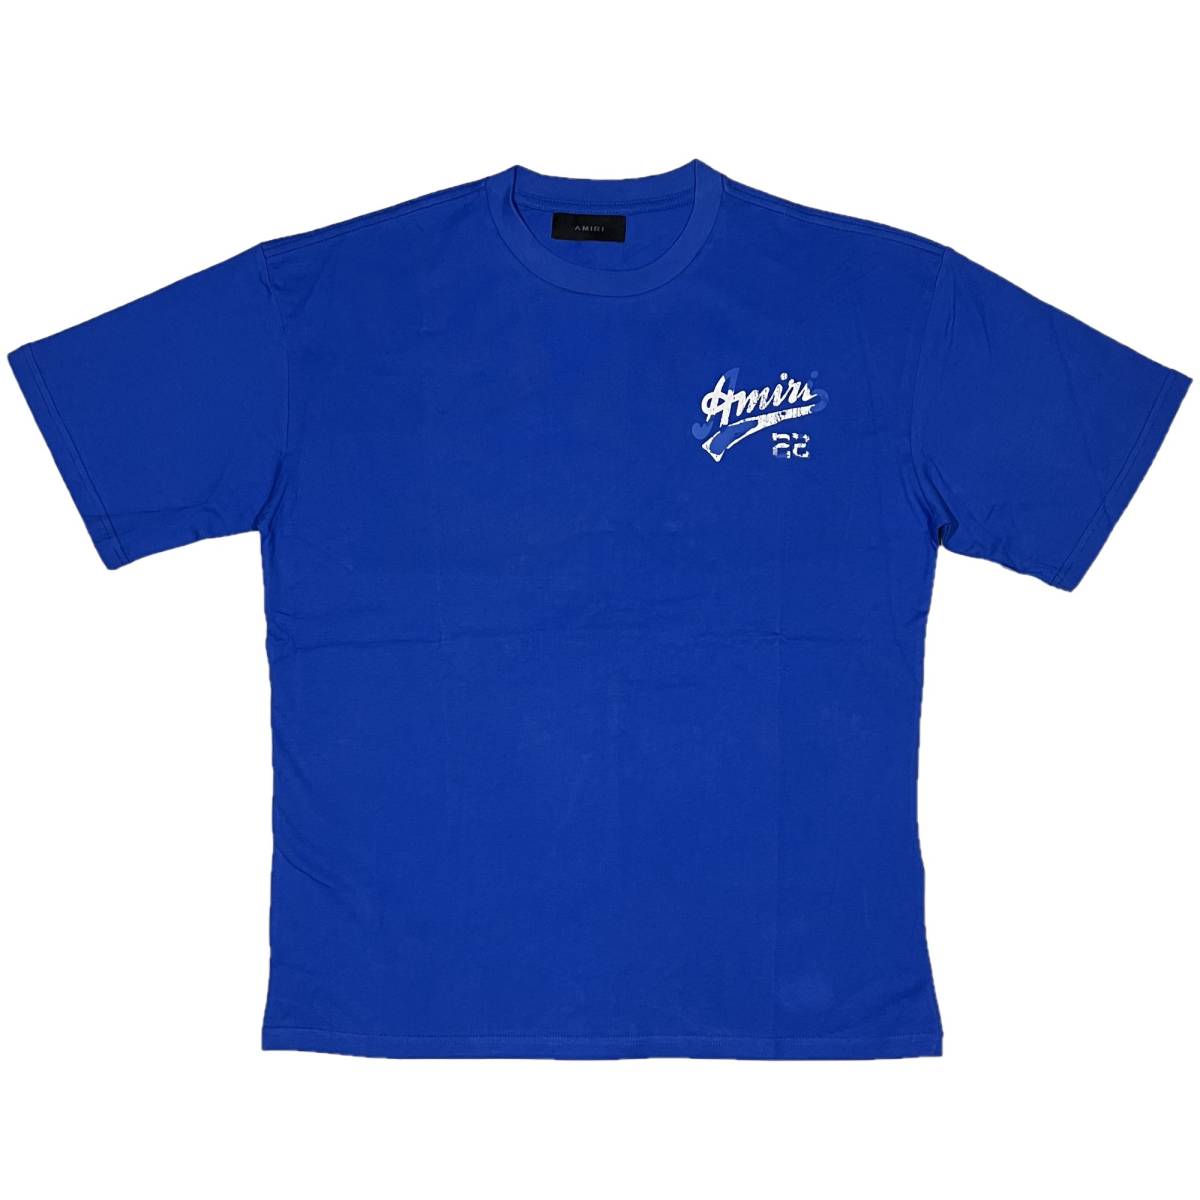 スーパーセール期間限定 [並行輸入品] AMIRI (L) (ブルー) Tシャツ